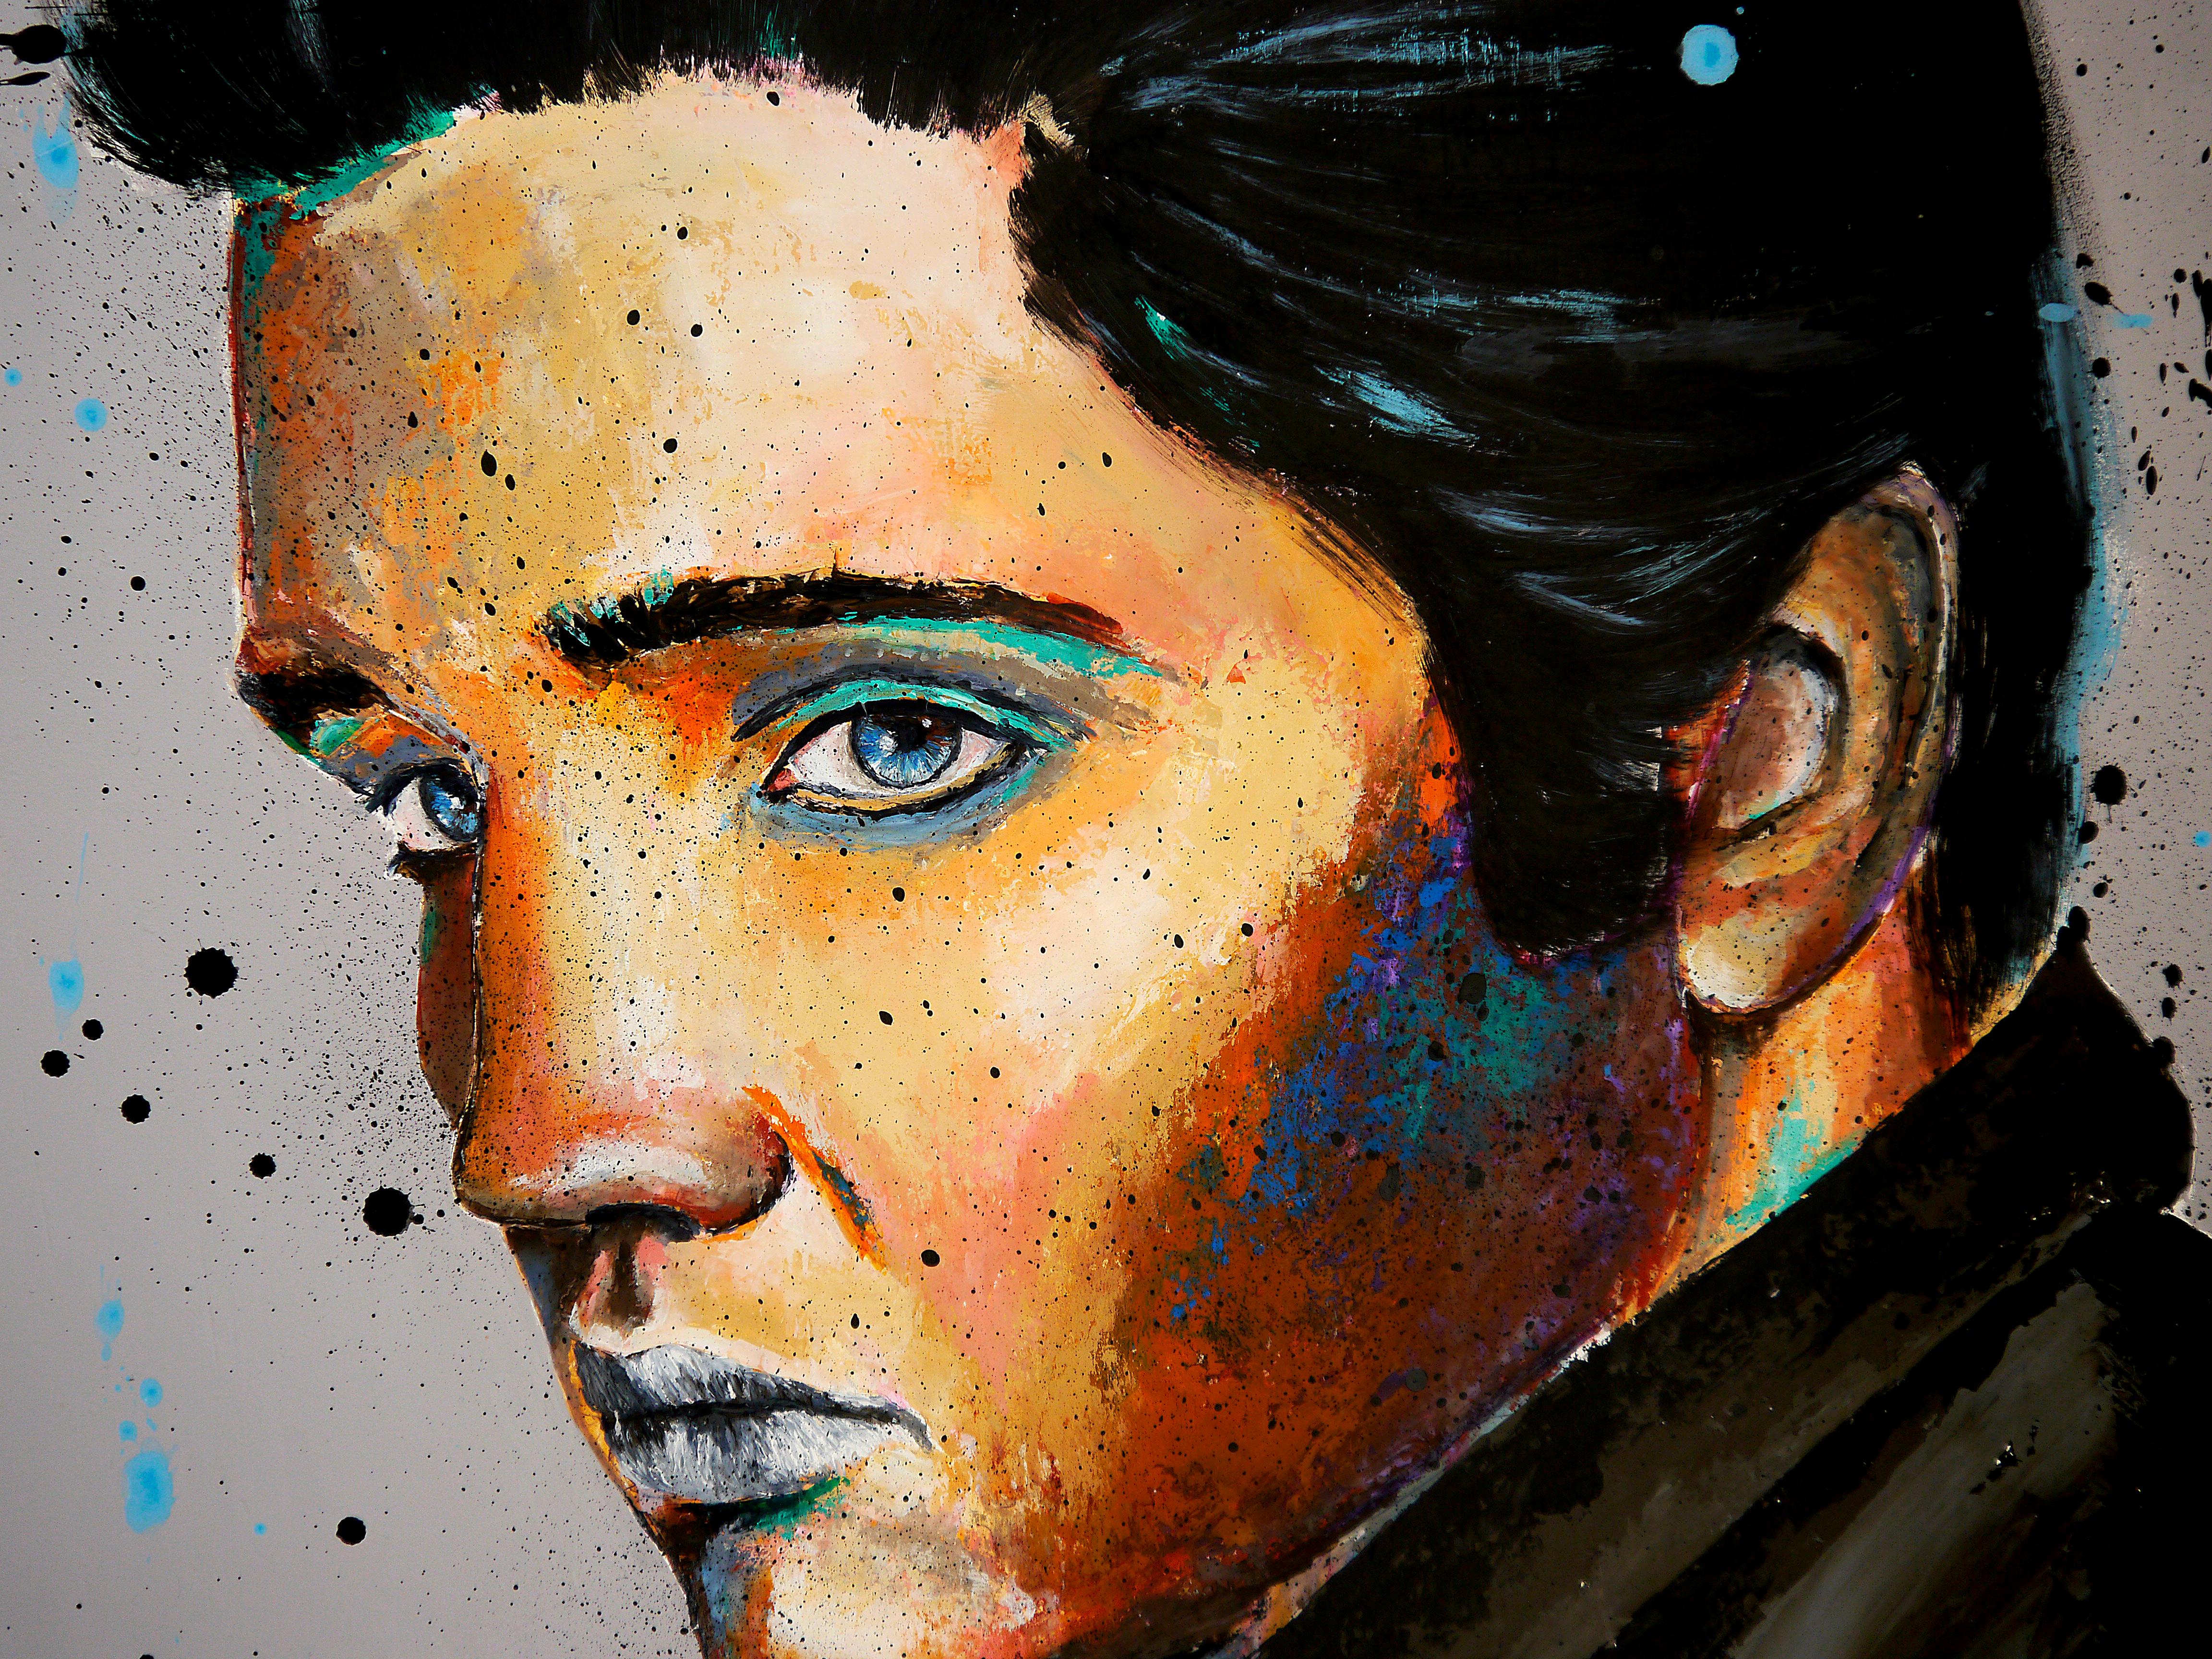 Elvis continental

Portrait du roi _ Elvis Presley.

Analyse structurelle :
Comme la peinture impressionniste,   le sujet est d'abord une étude de la lumière sur le corps humain, créant de forts contrastes sur la peau. 

Technique : huile, acrylique